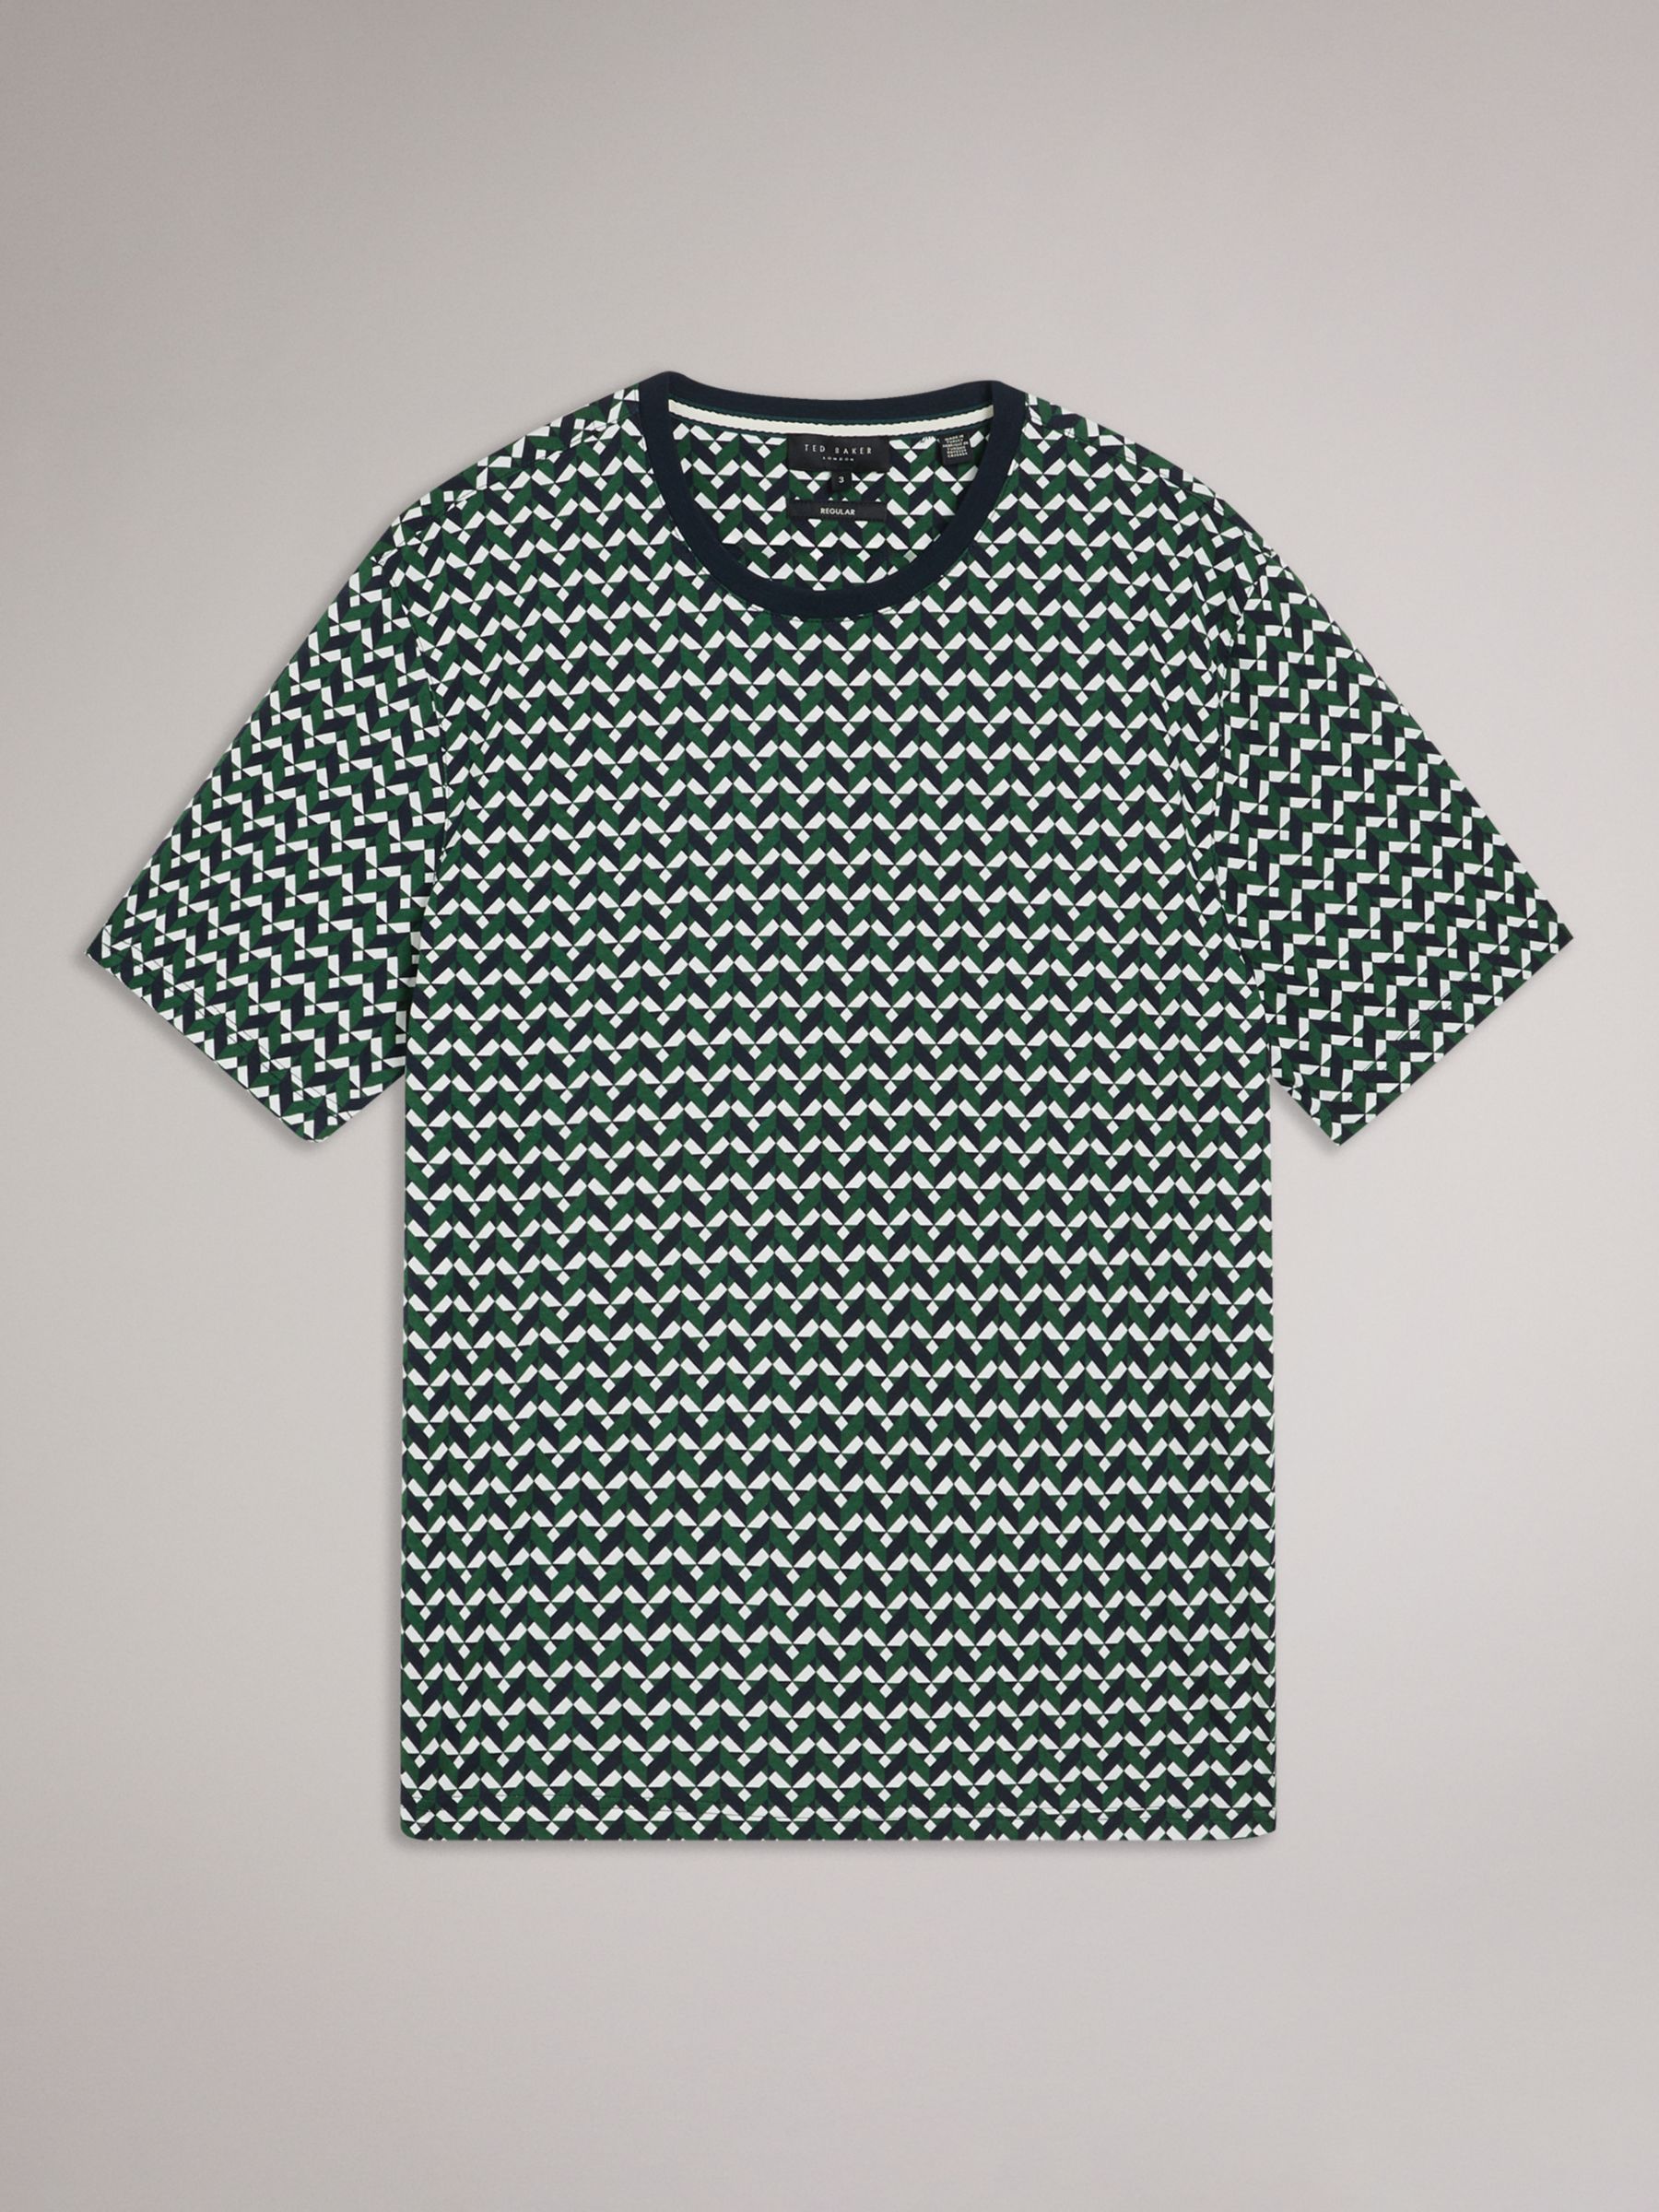 Ted Baker Chetel Short Sleeve Regular Geo Print T-Shirt, Green/Multi, XL